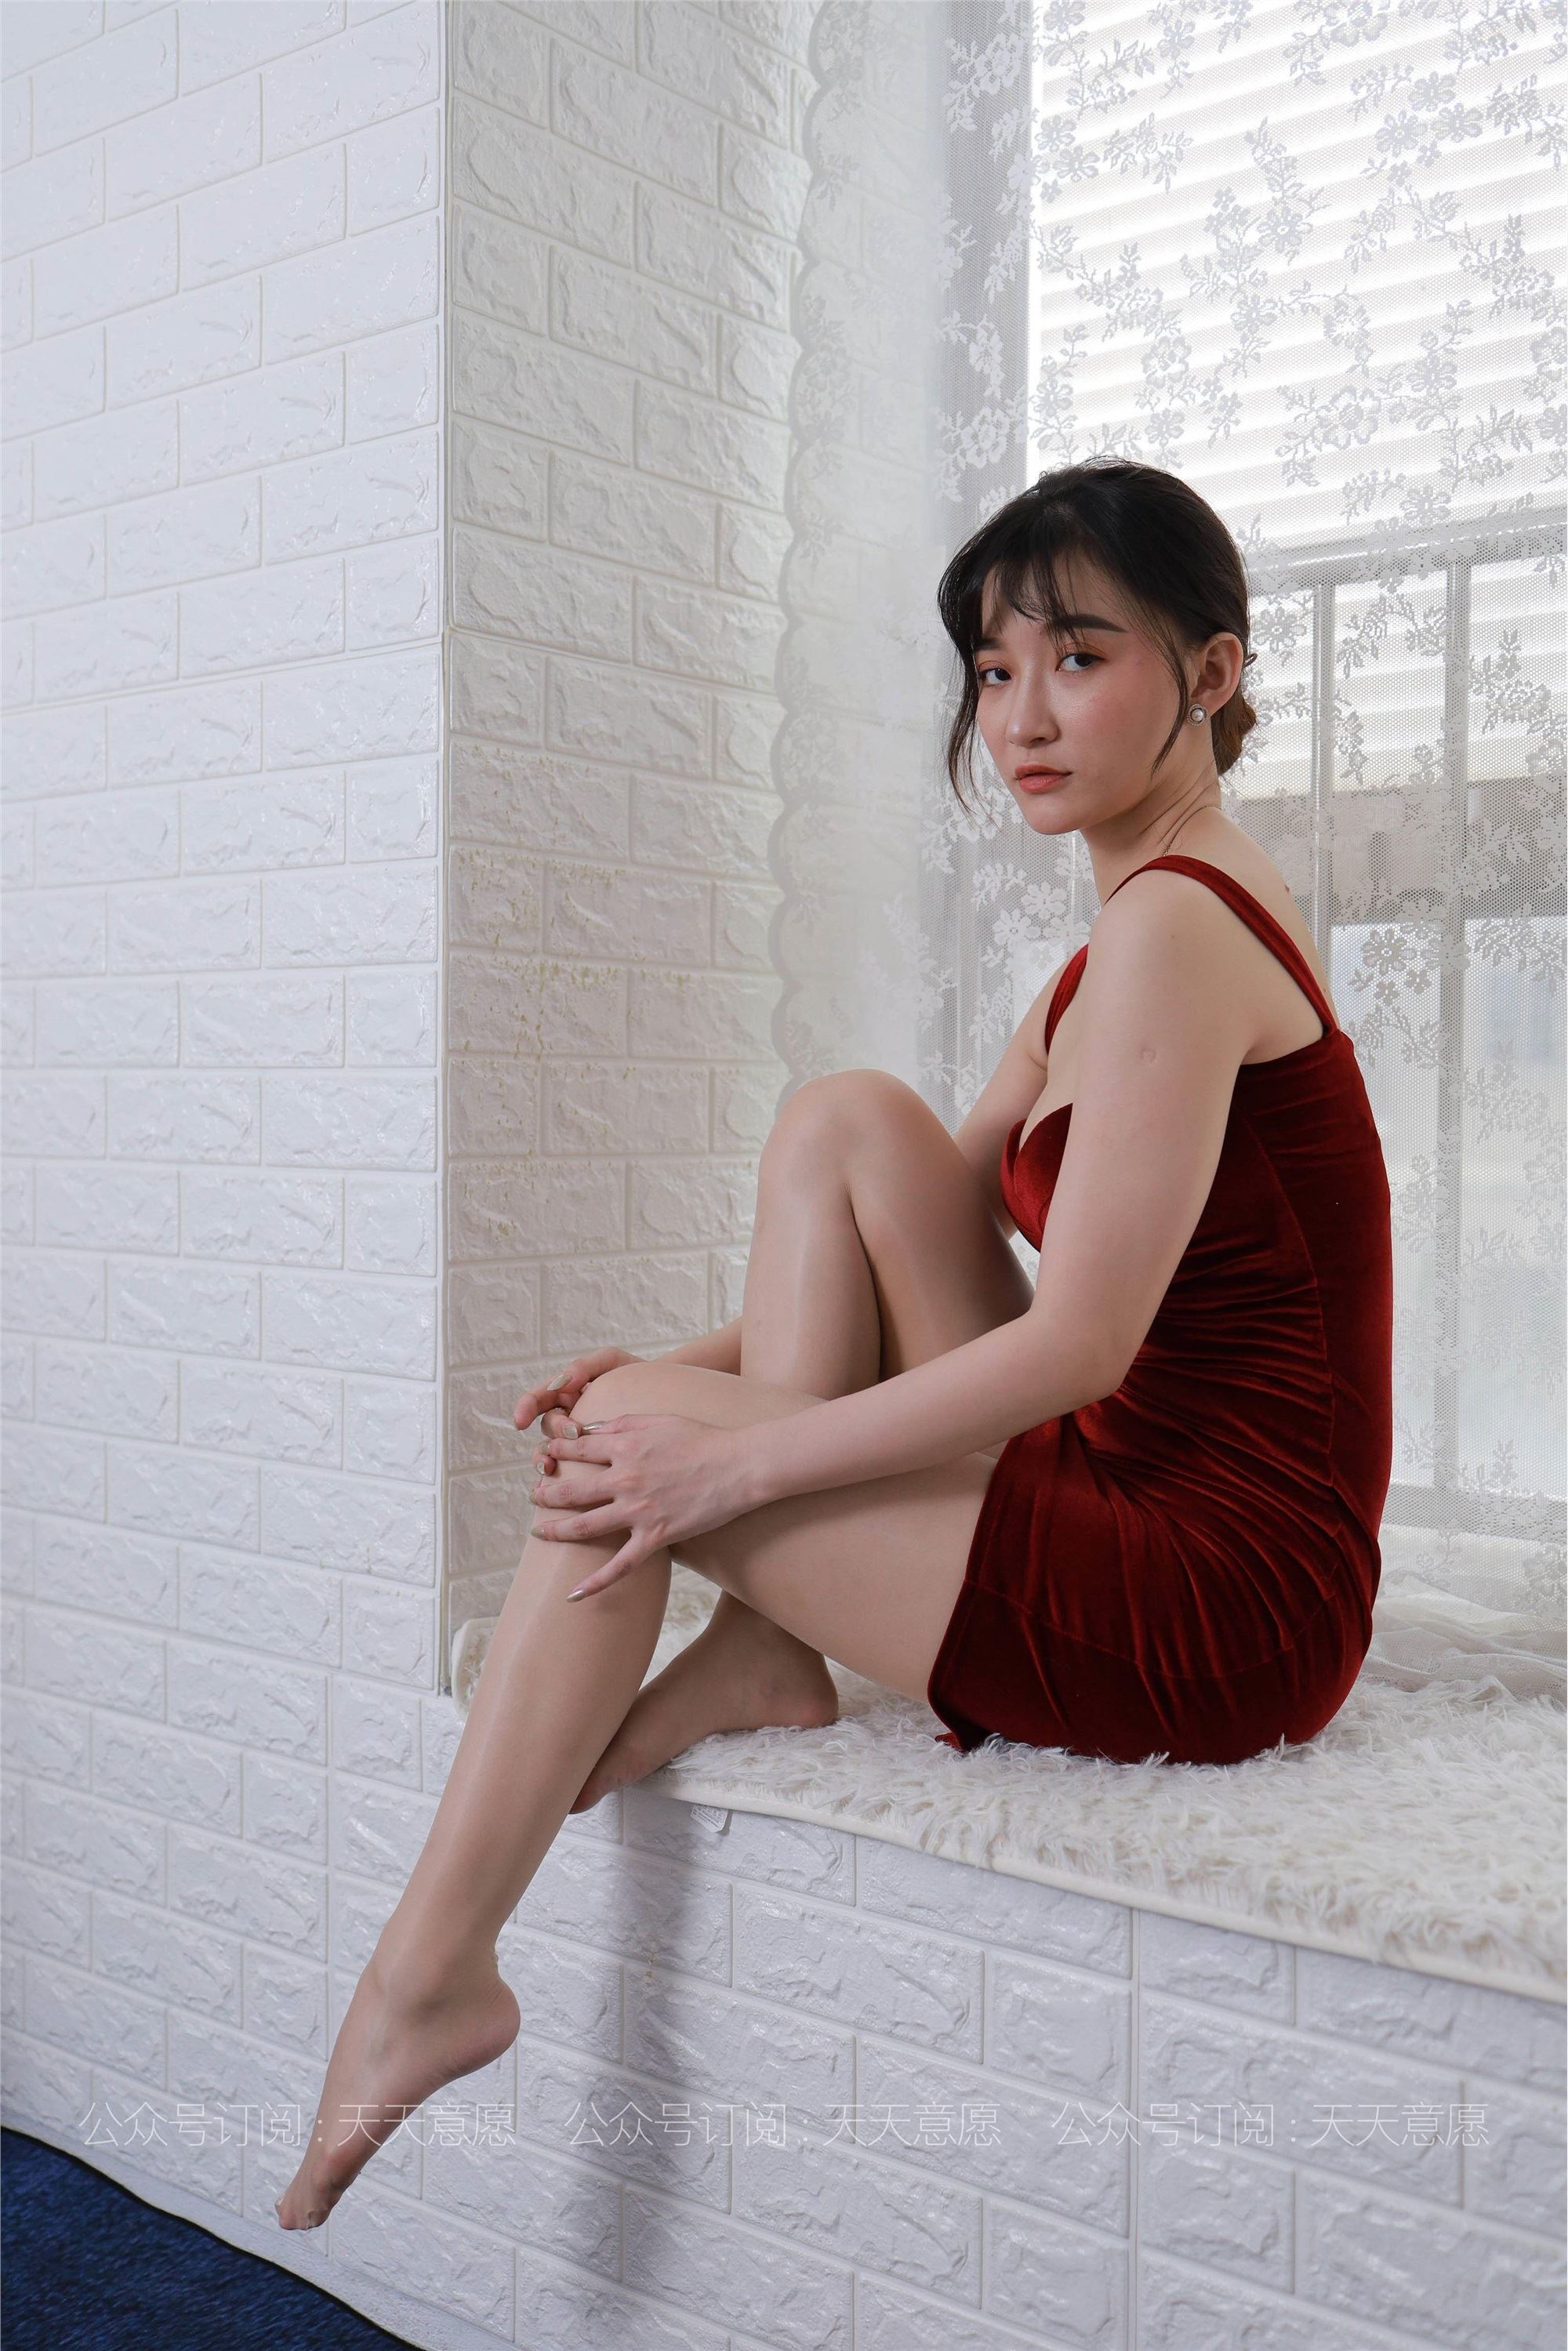 IESS Unique Interest to 2021.07.24 Sixiang 869: Qiu Qiu Xing Gan Red Dress Goddess